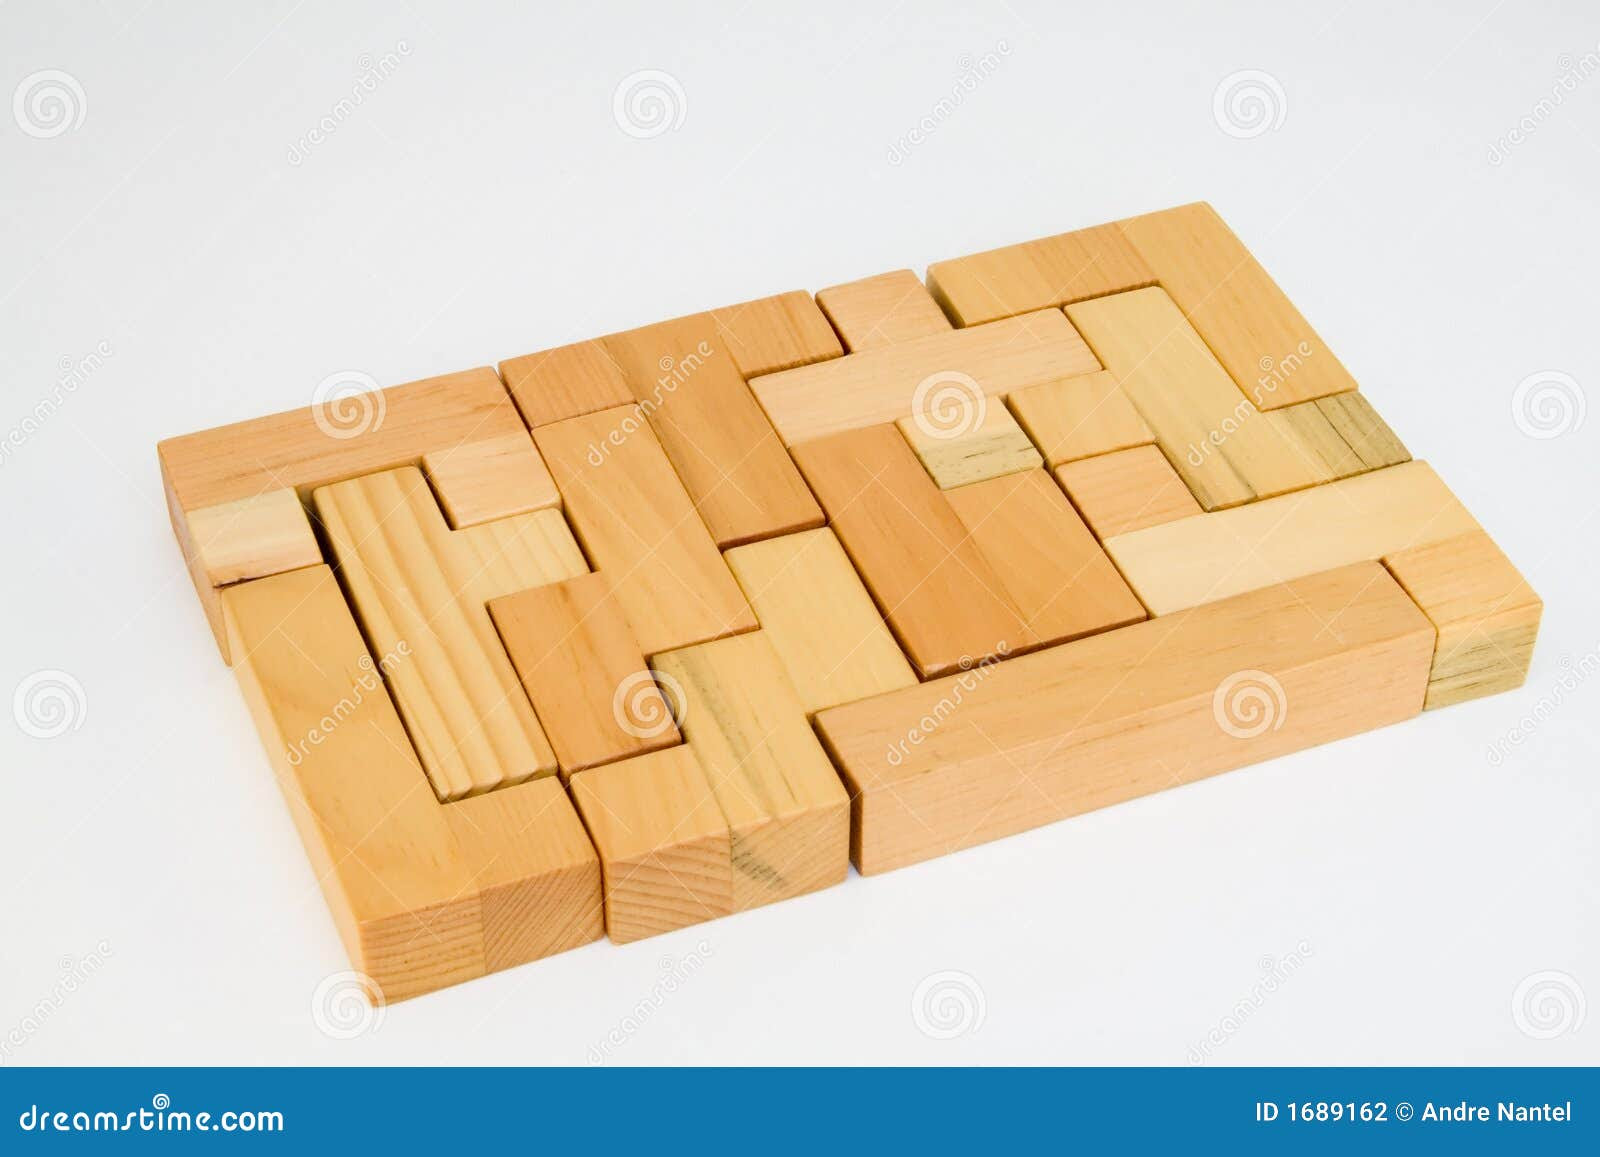 DIY Wood Design: 3d puzzle woodworking plans